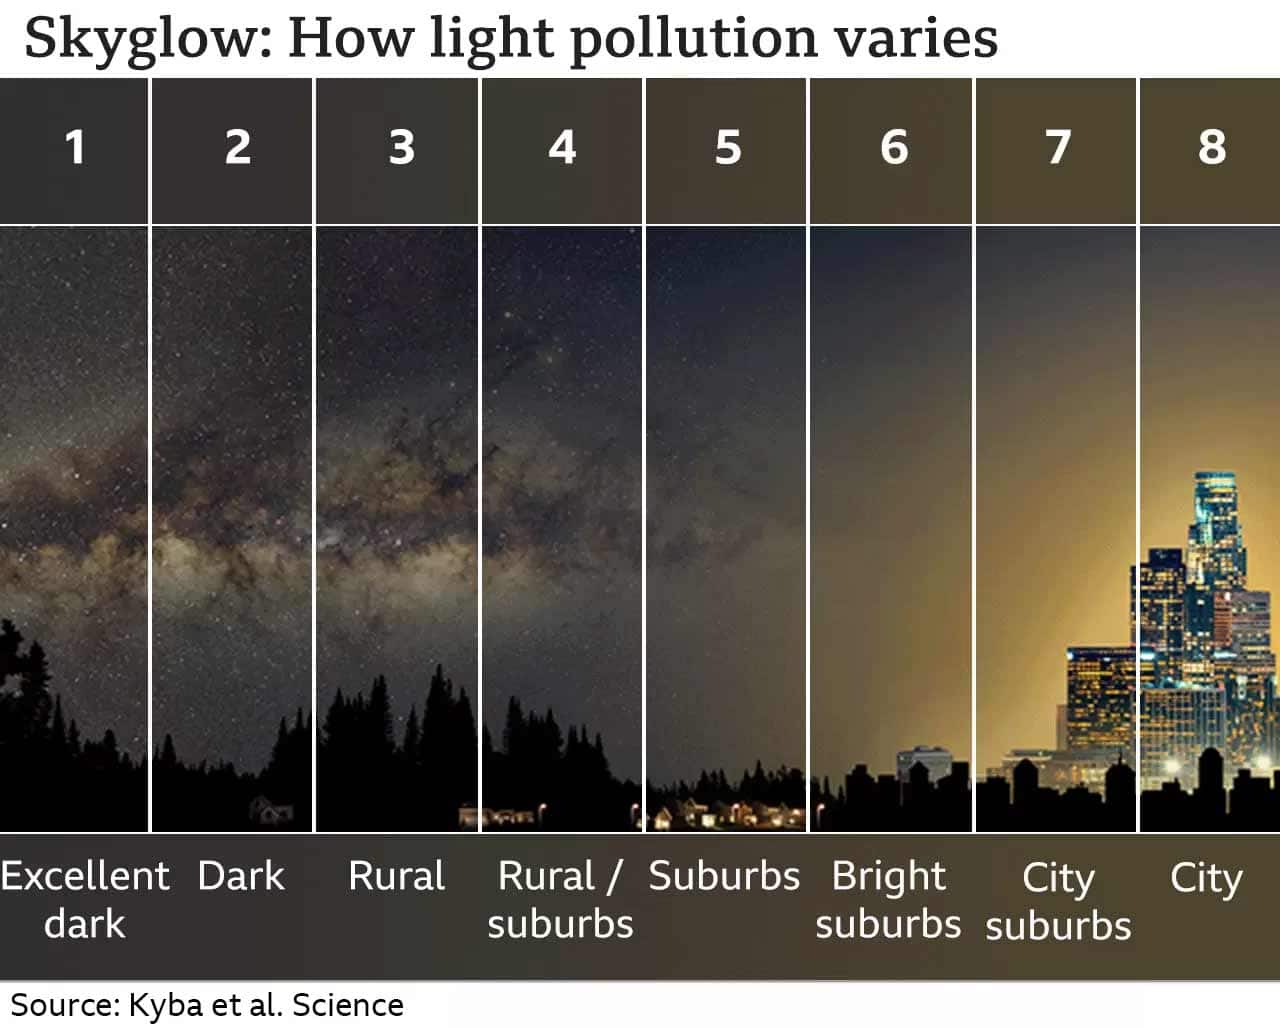 Le ciel étoilé en danger : La pollution lumineuse réduit les étoiles visibles